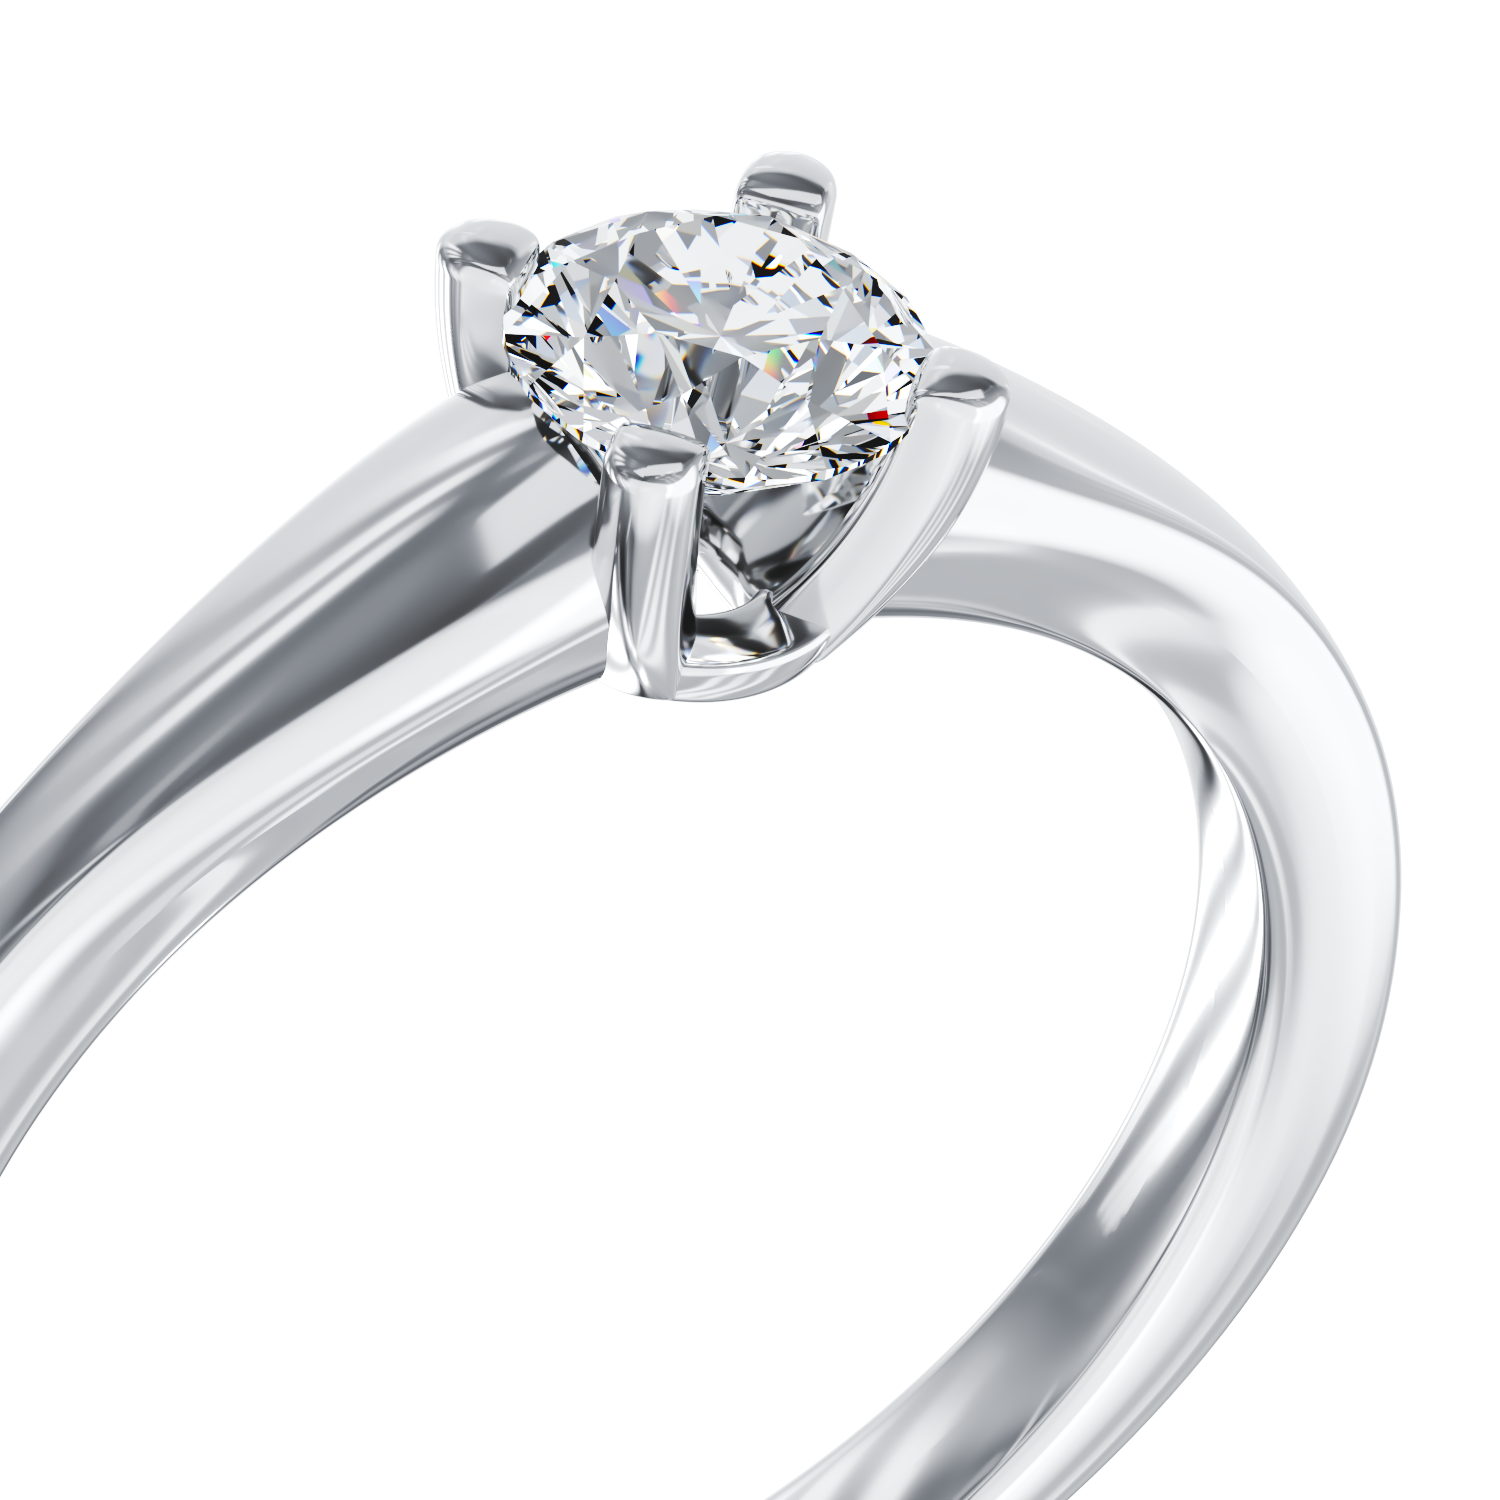 Poze Inel de logodna din aur alb de 18K cu un diamant solitaire de 0.31ct